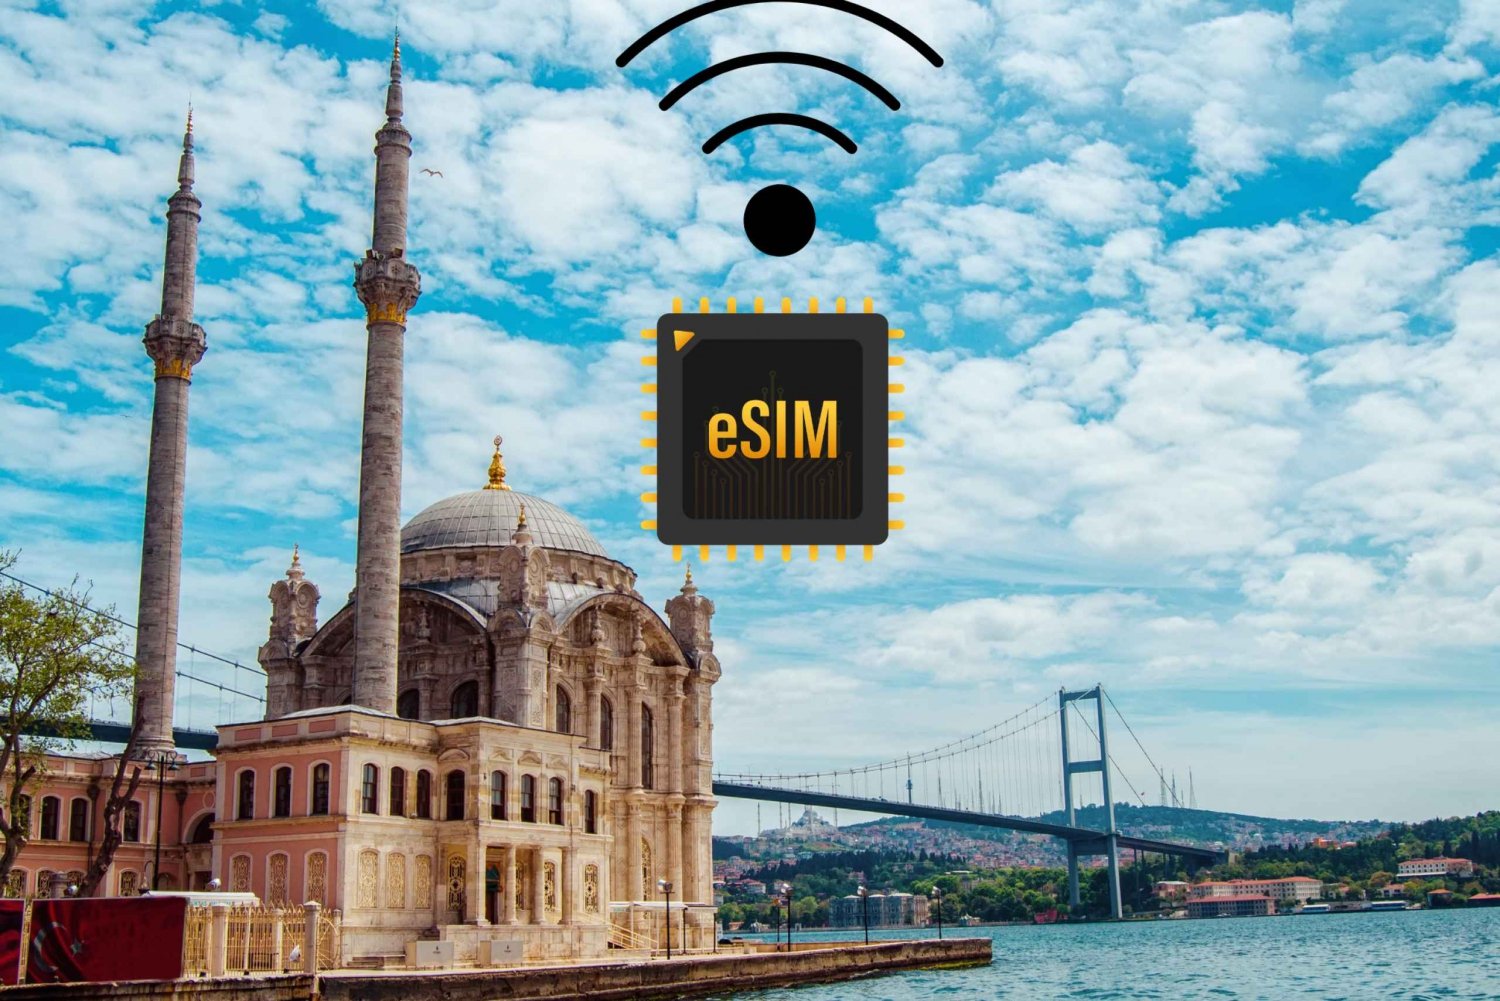 eSIM Turquia: Plano de dados de Internet de alta velocidade 4G/5G